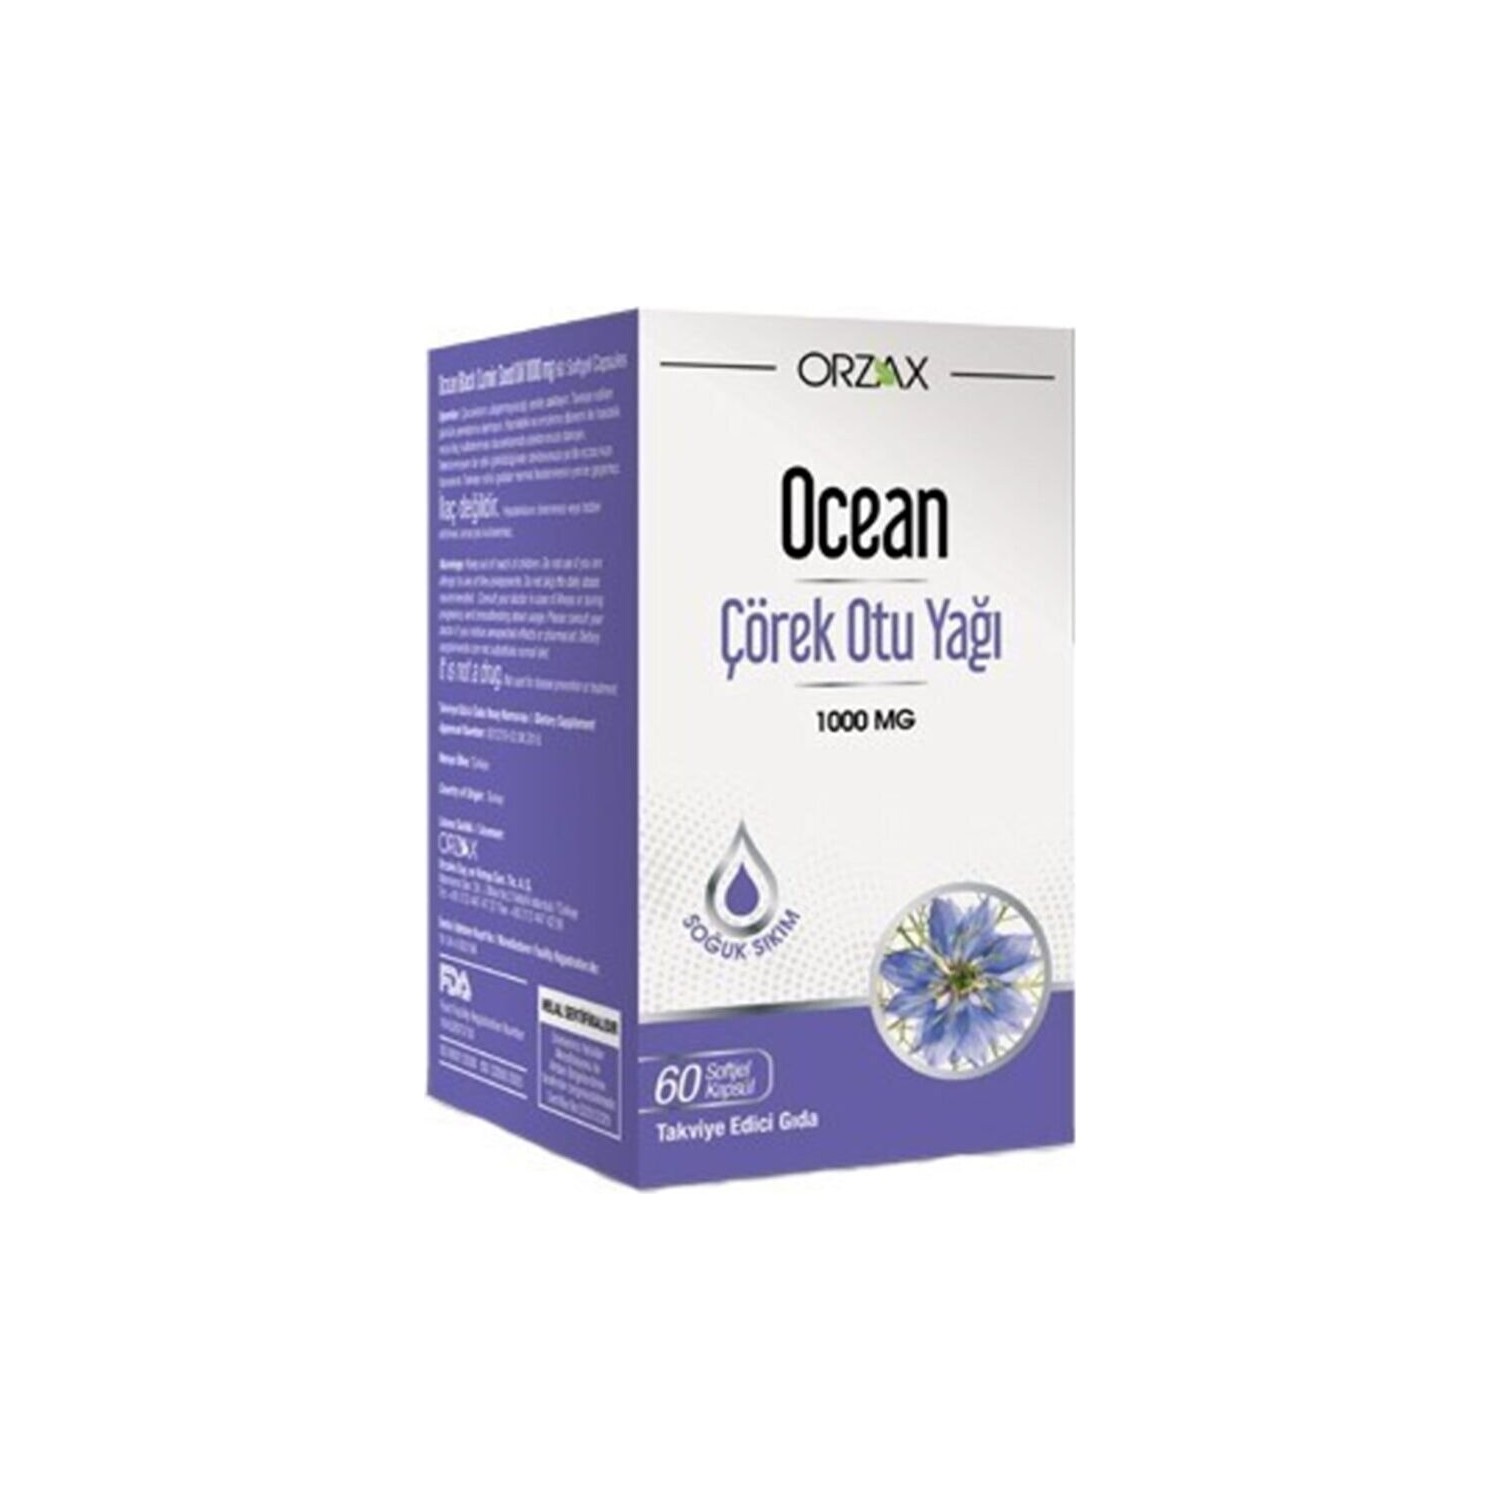 Масло черного тмина Ocean, 60 капсул Dcn101, 1000 мг